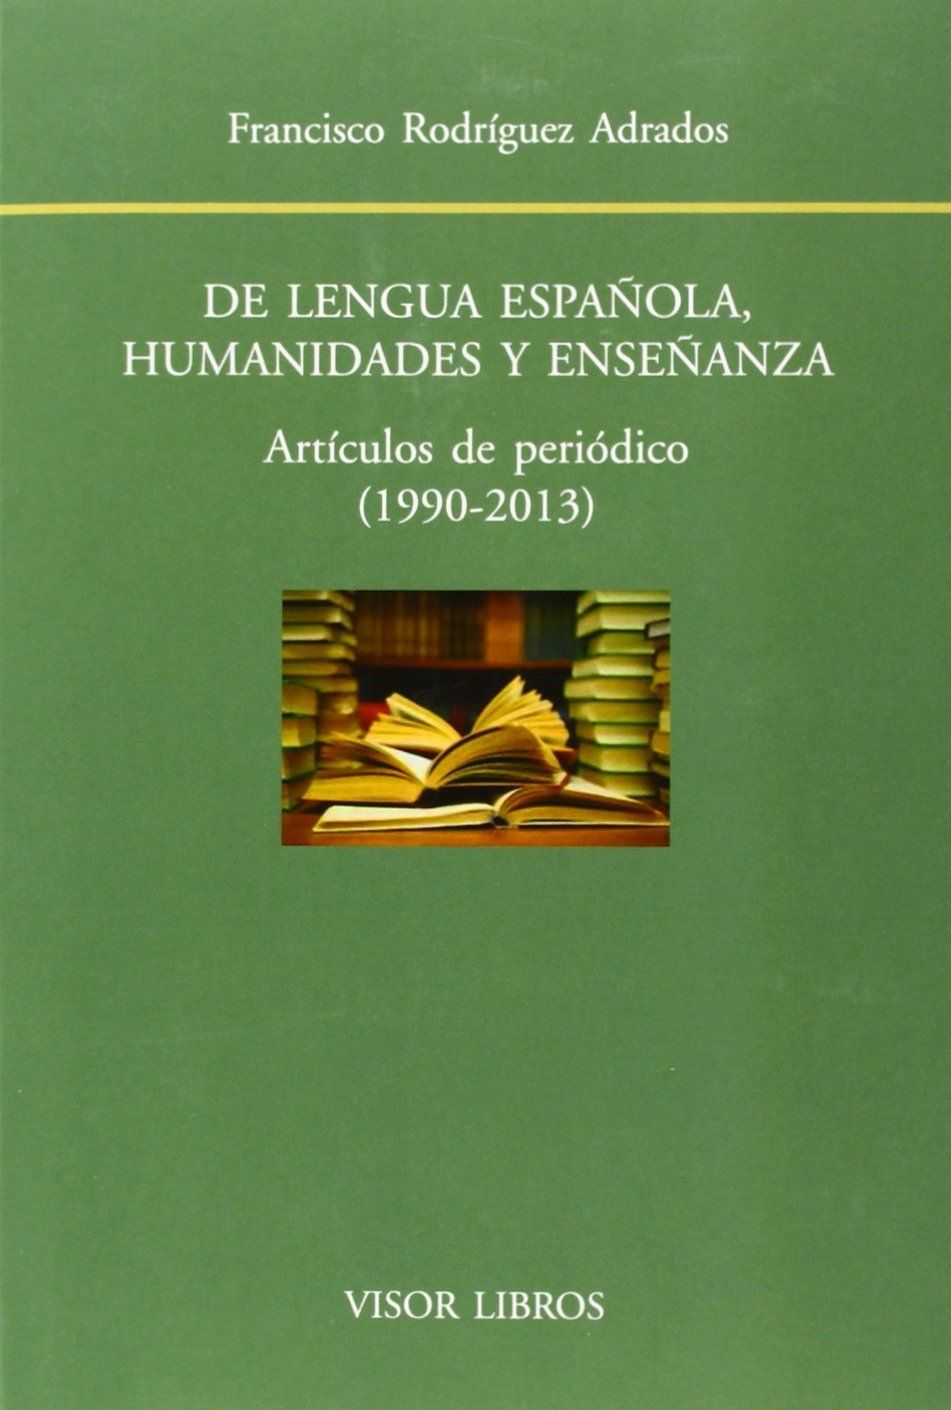 DE LENGUA ESPAÑOLA, HUMANIDADES Y ENSEÑANZA. ARTÍCULOS DE PERIÓDICOS, 1990-2013